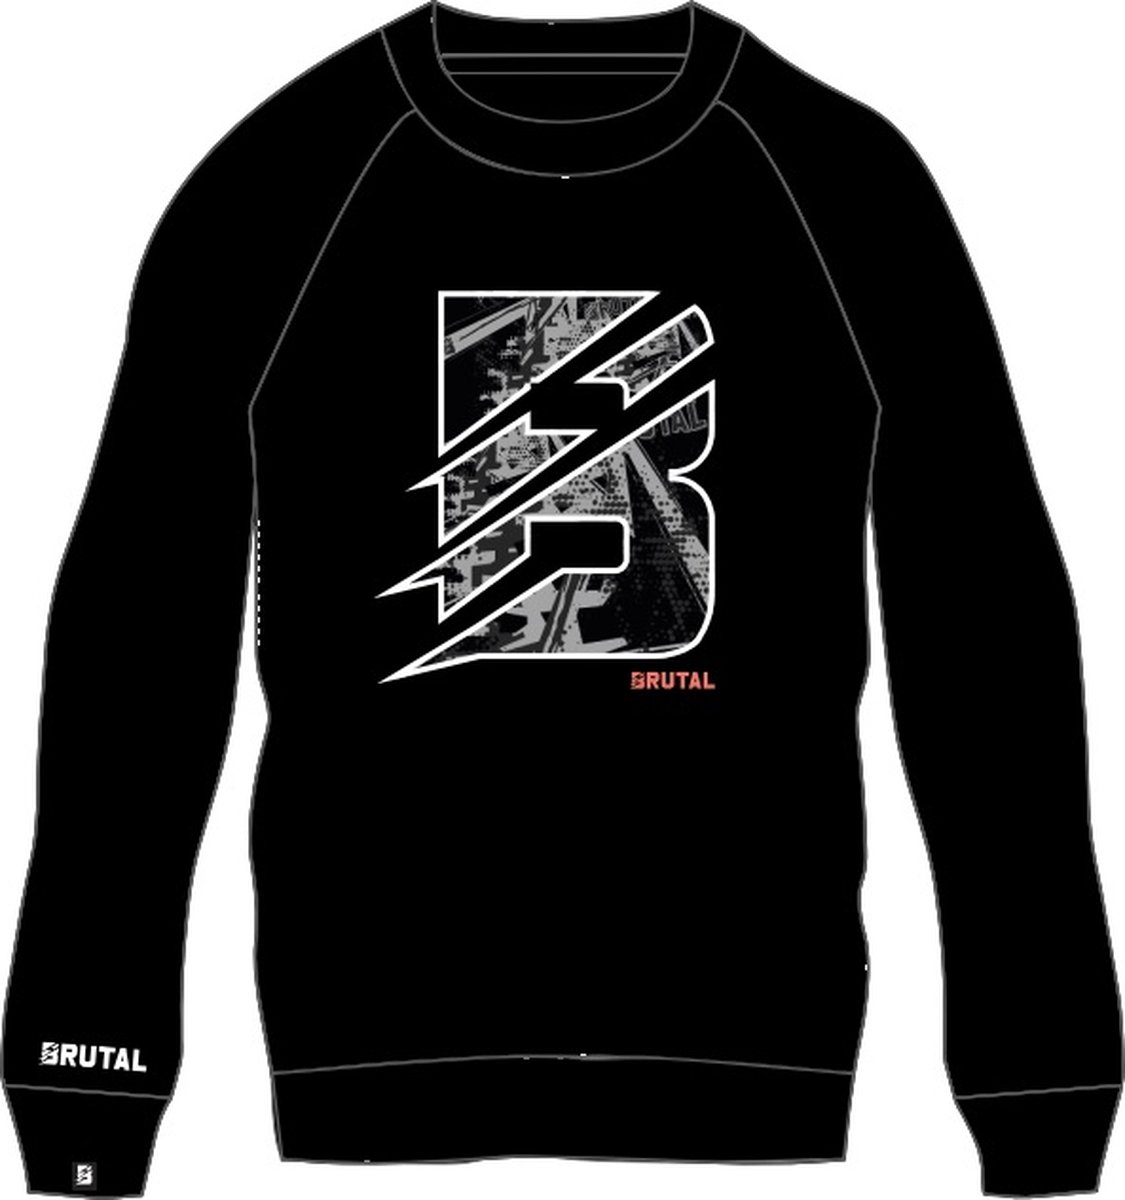 BRUTAL® - Sweater - Sweatshirt Trui - Trui - Zwart - Grijs - Trui - Heren -Dames - Maat S